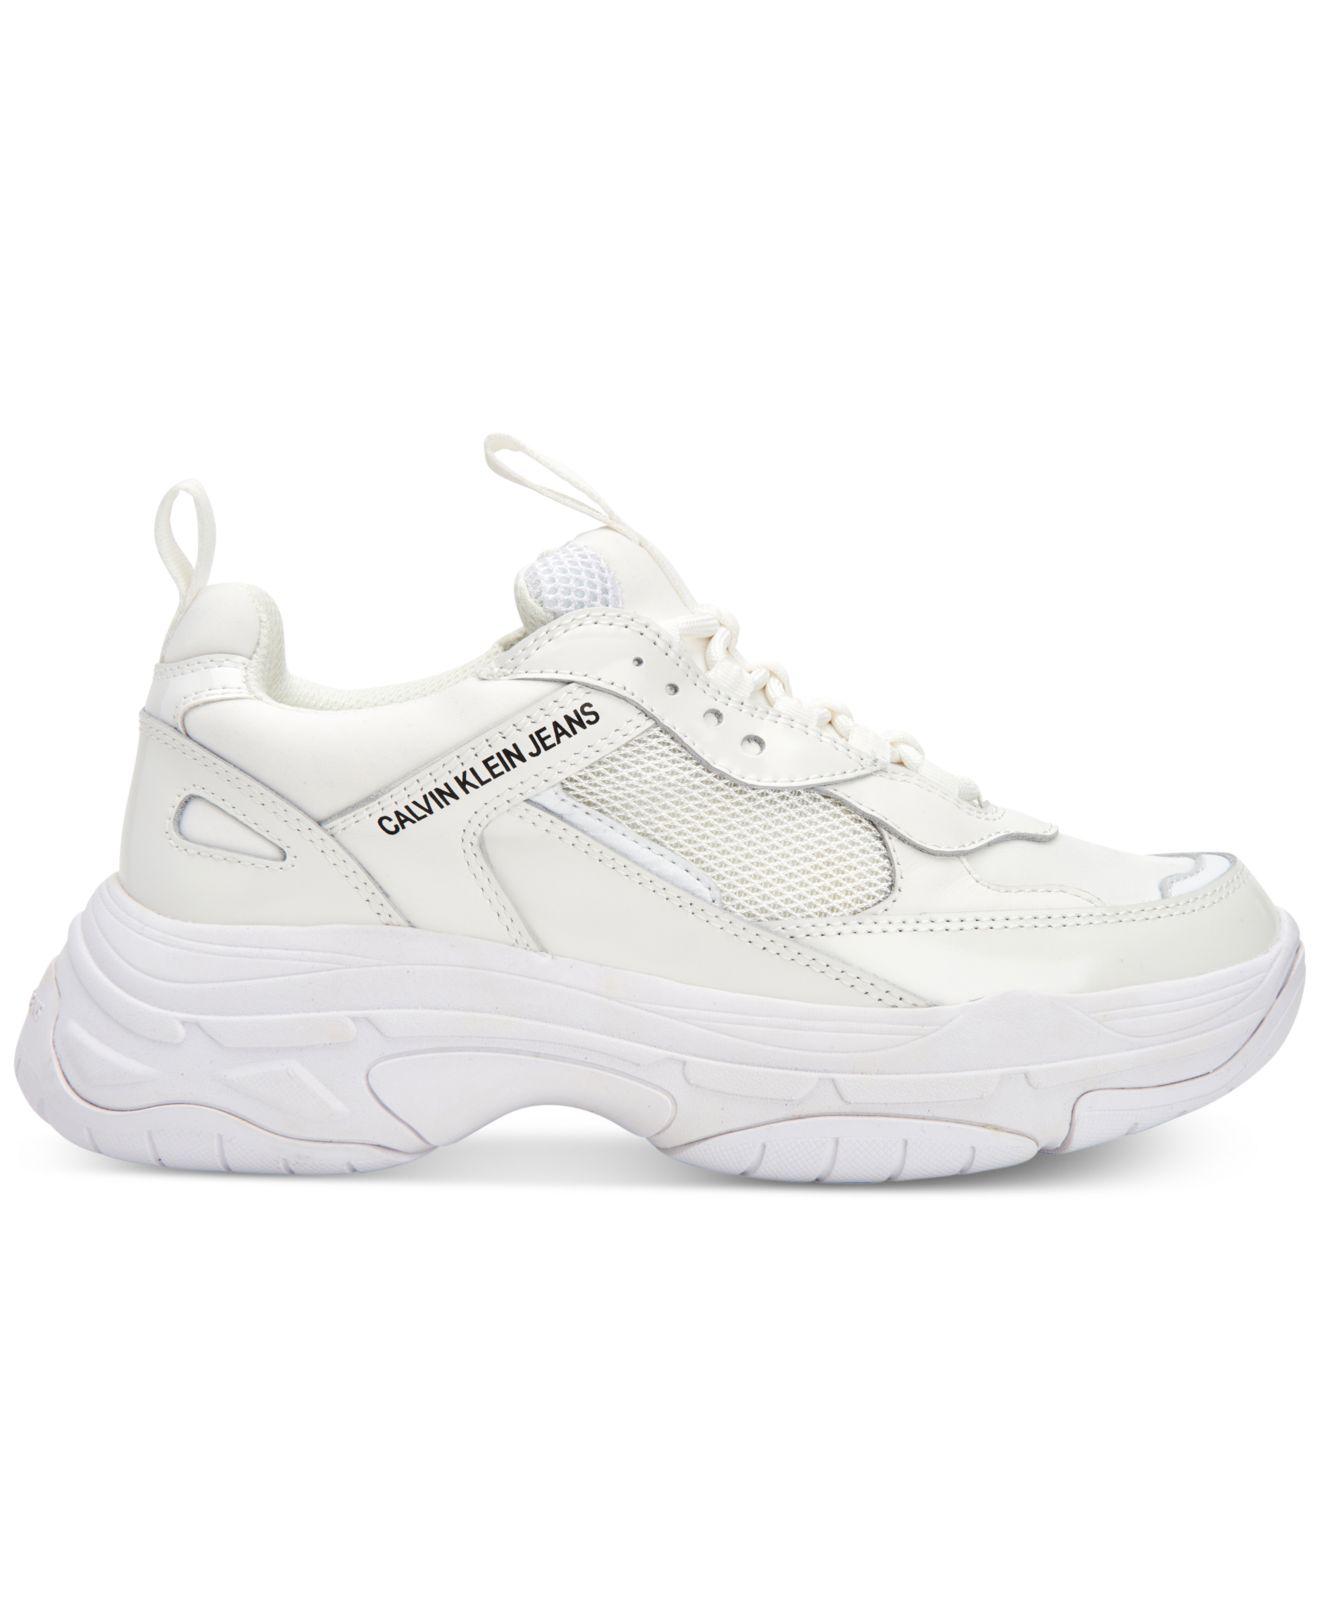 Tryk ned køretøj underordnet Calvin Klein Maya Sneakers White Flash Sales - www.bridgepartnersllc.com  1692858327